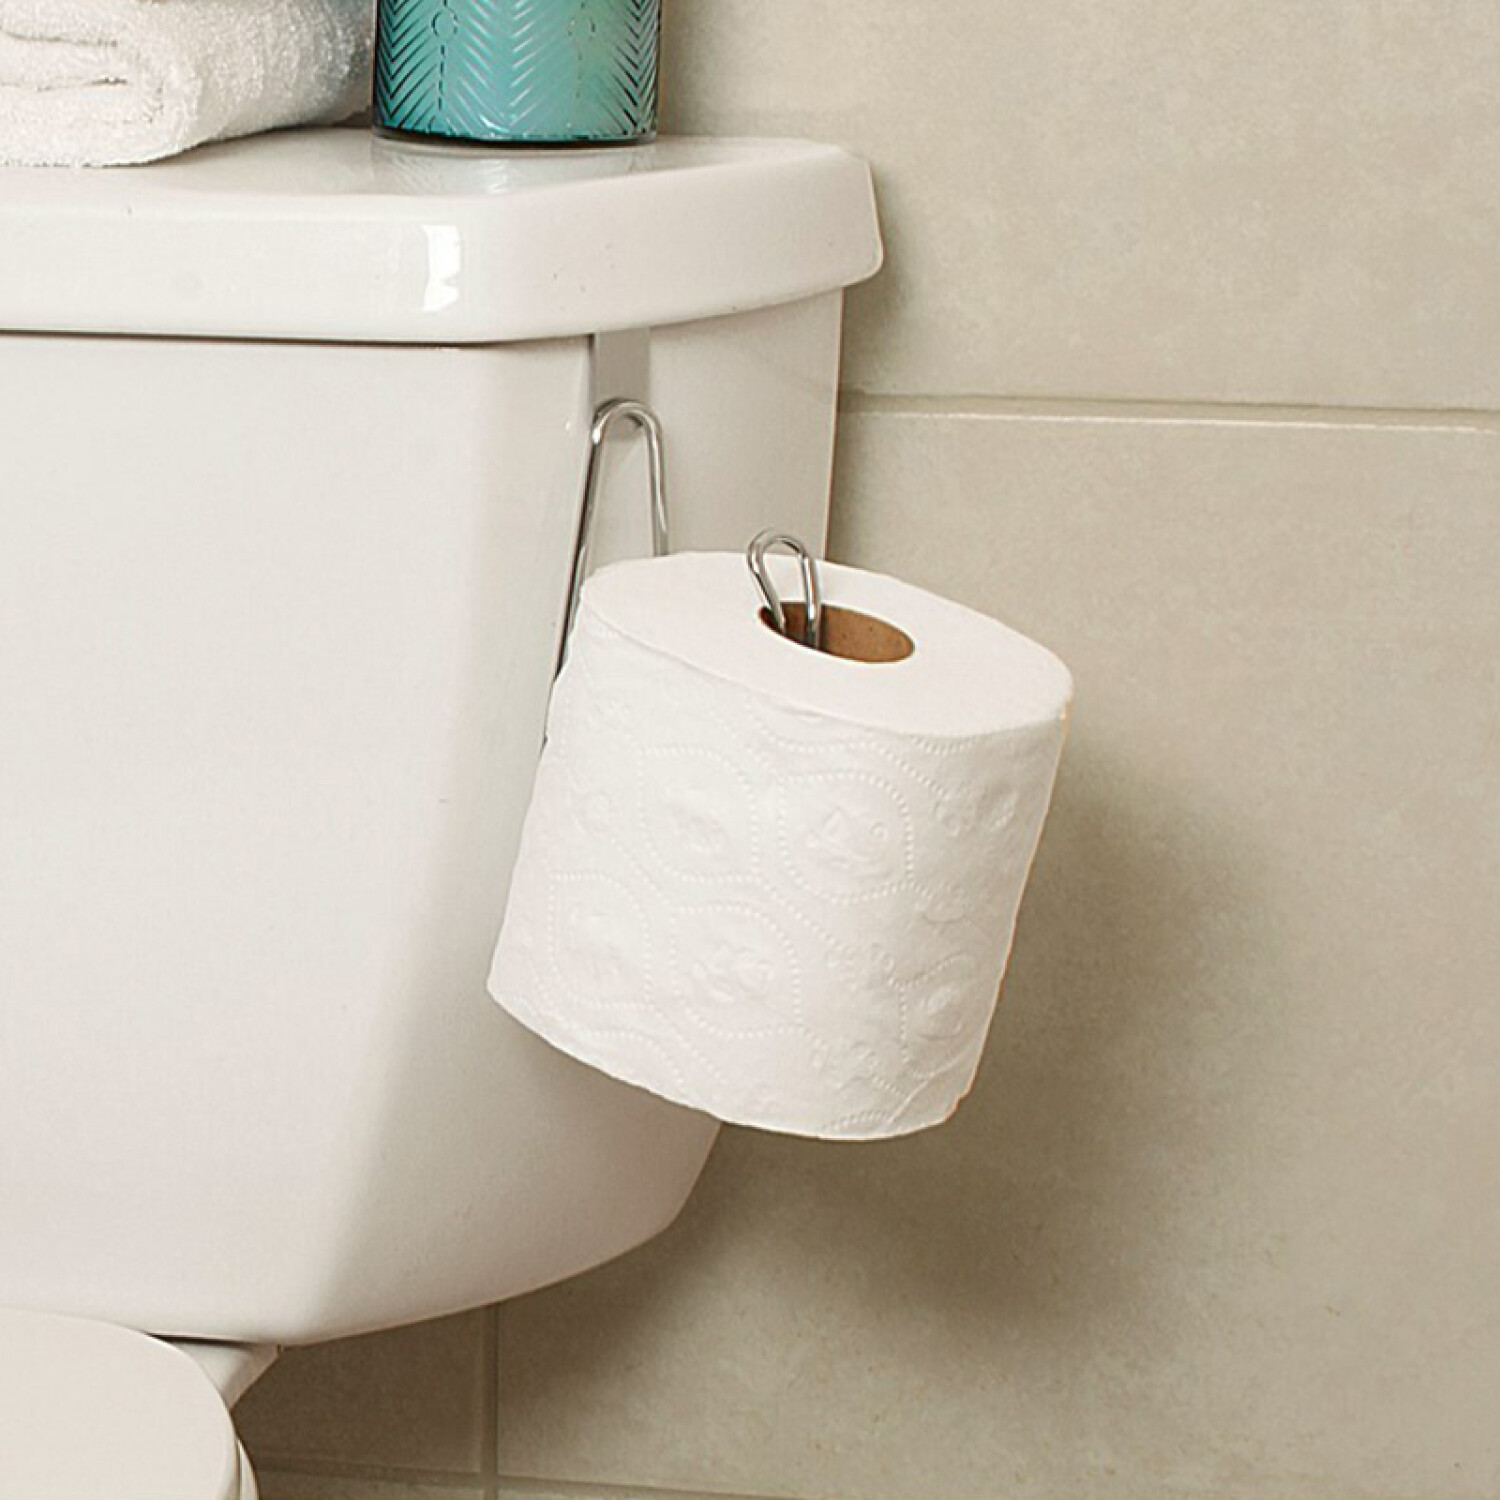 Soporte de papel higiénico, soporte para papel higiénico sobre el tanque,  soporte para rollo de papel higiénico, soporte para papel higiénico